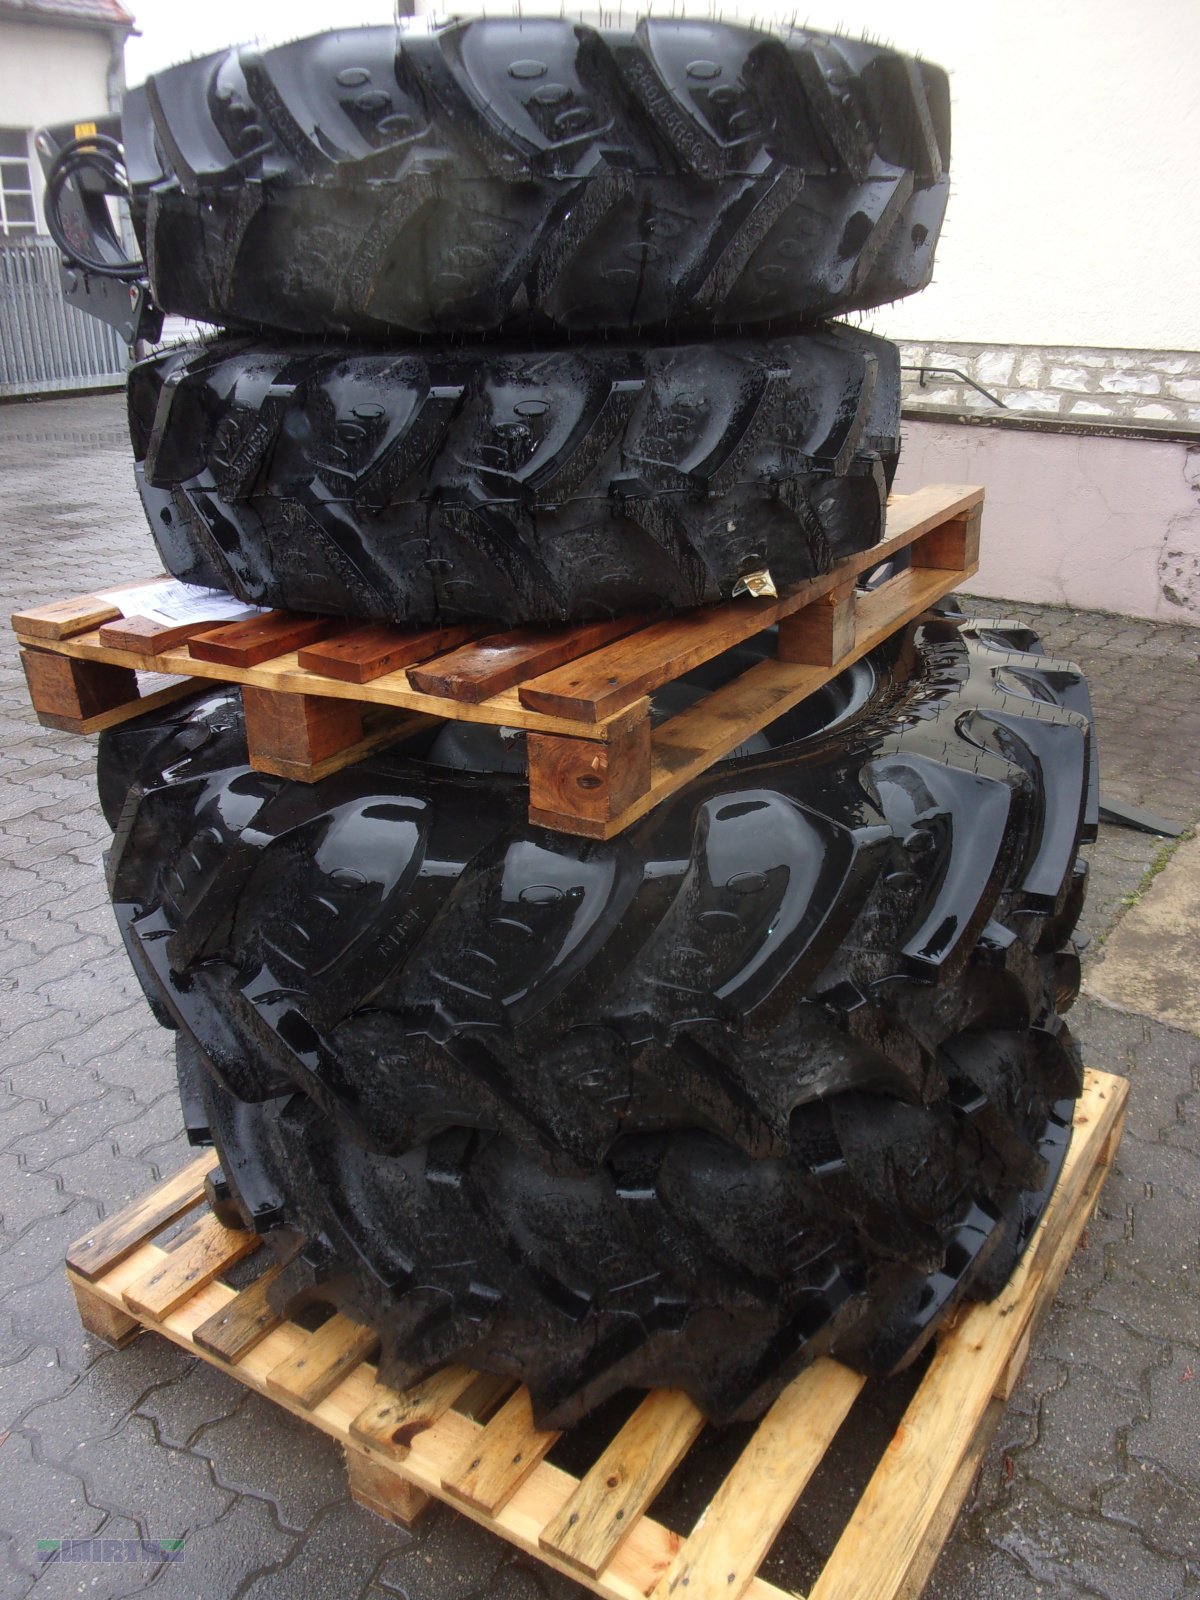 Sonstige Räder & Reifen & Felgen des Typs Reifen Verschiedene Räder in verschiedenen Größen und Ausführungen, Gebrauchtmaschine in Buchdorf (Bild 1)